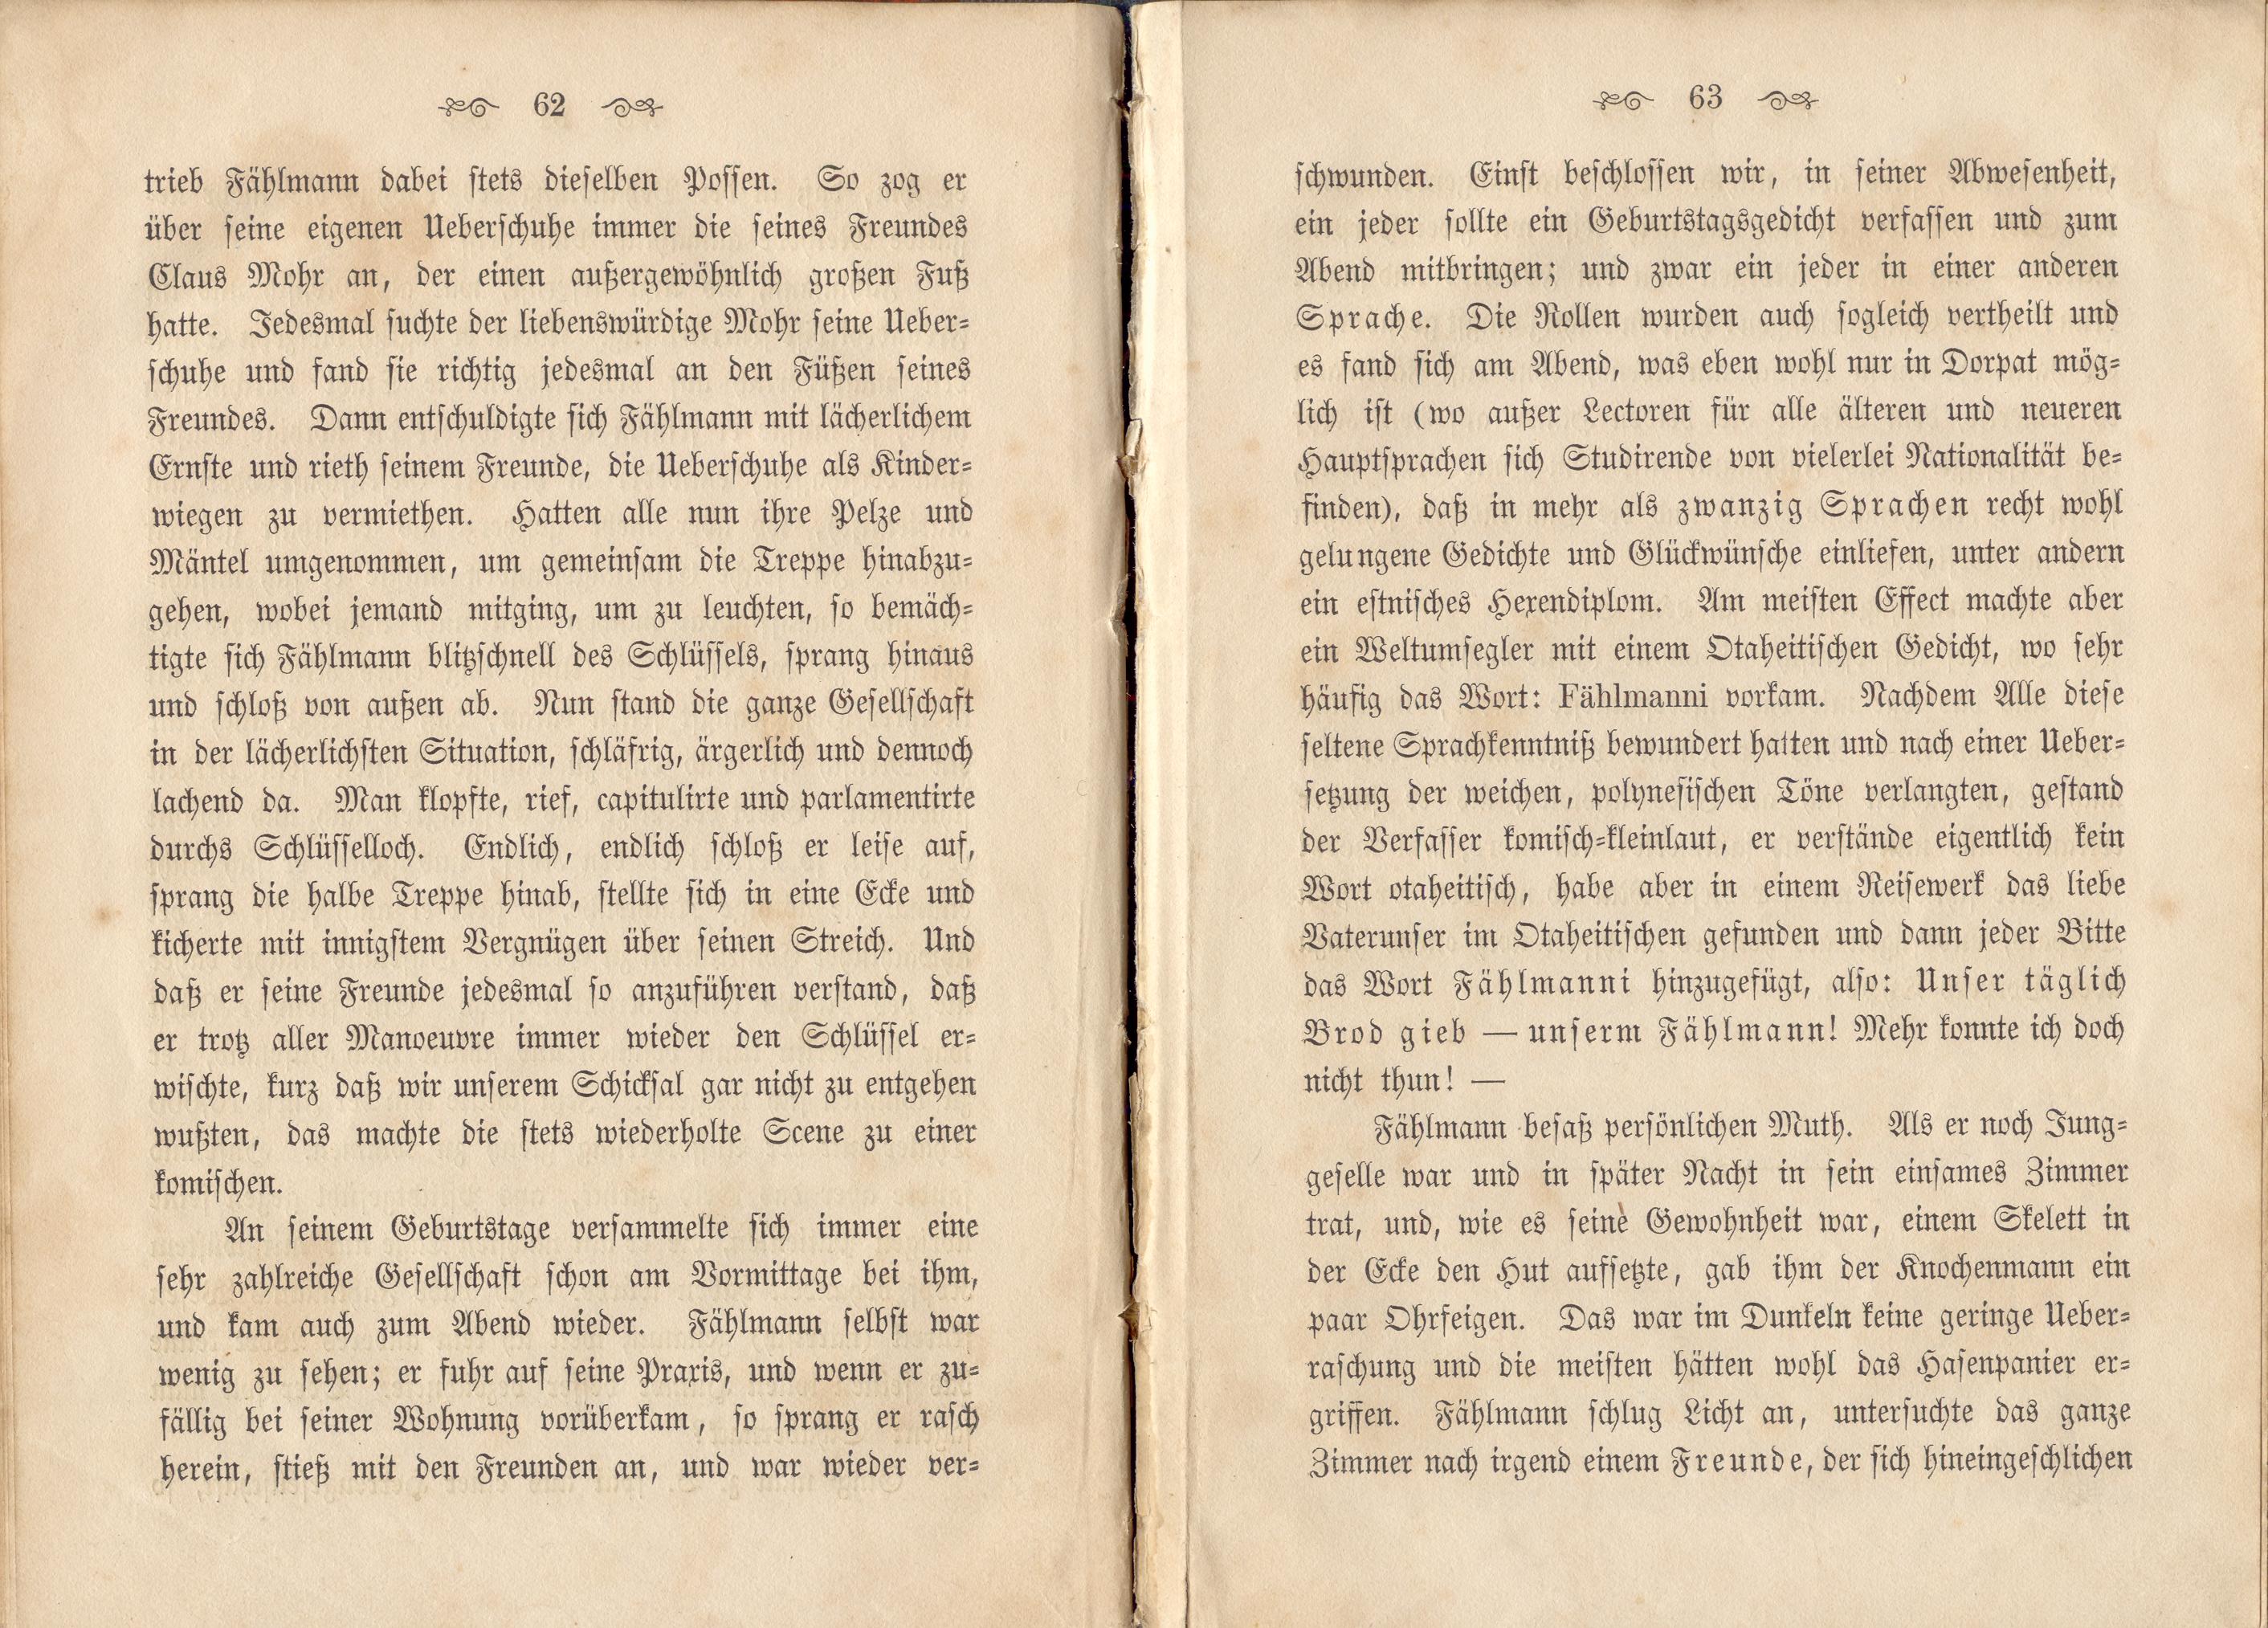 Dorpats Grössen und Typen (1868) | 34. (62-63) Основной текст